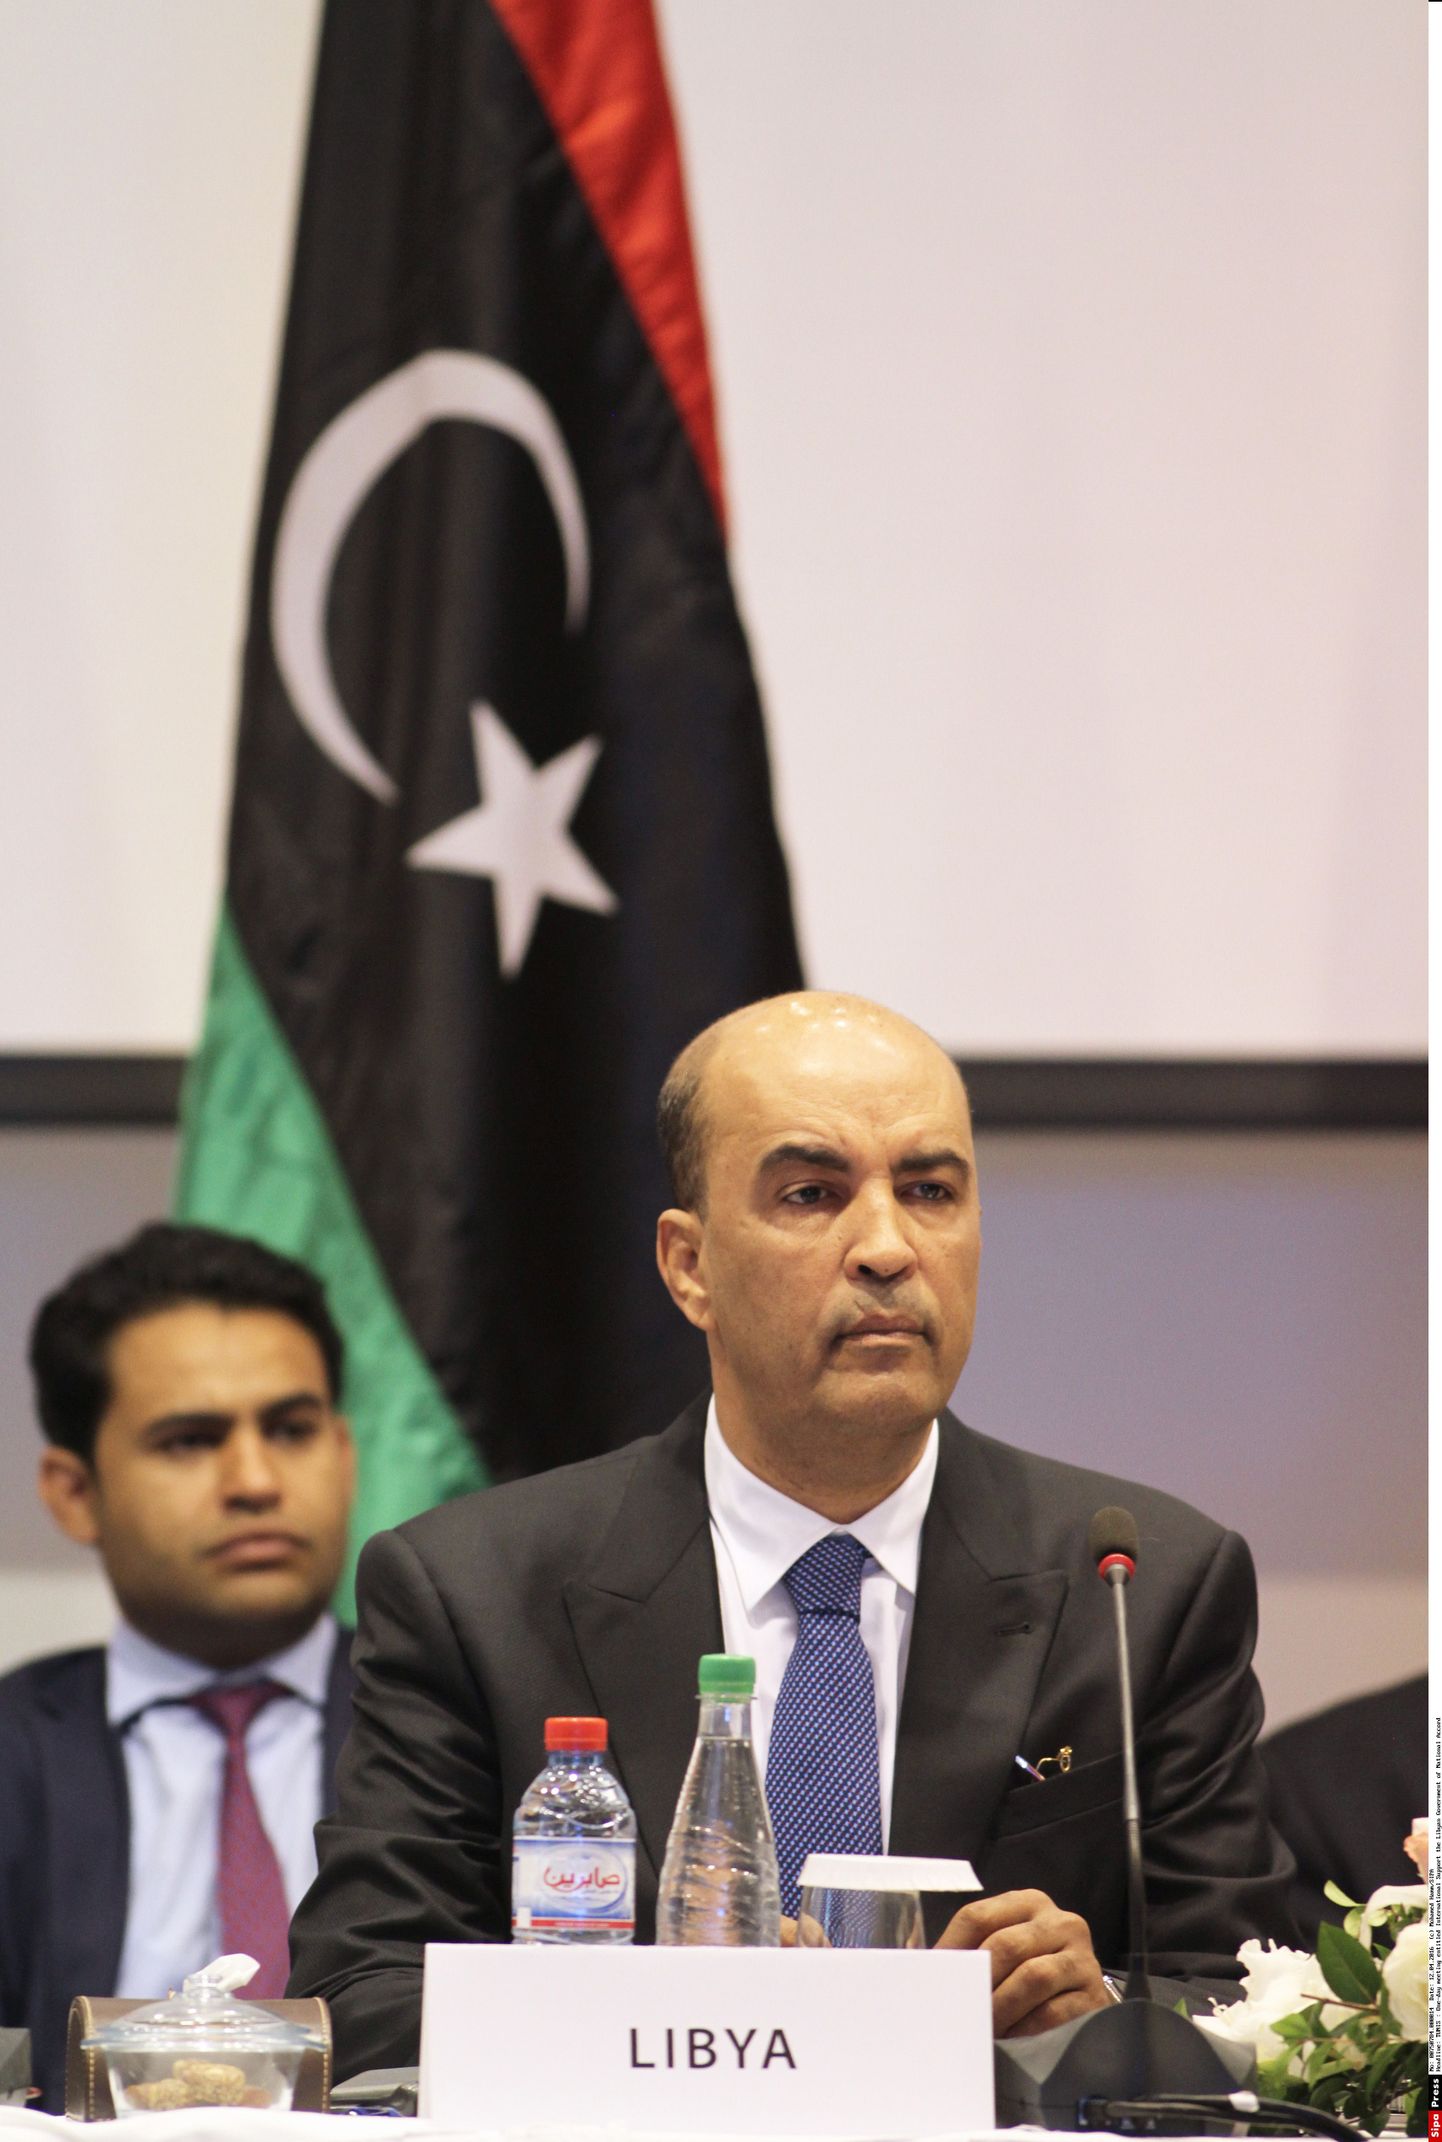 Liibüa uue valitsuse asepeaminister Moussa al-Kony,